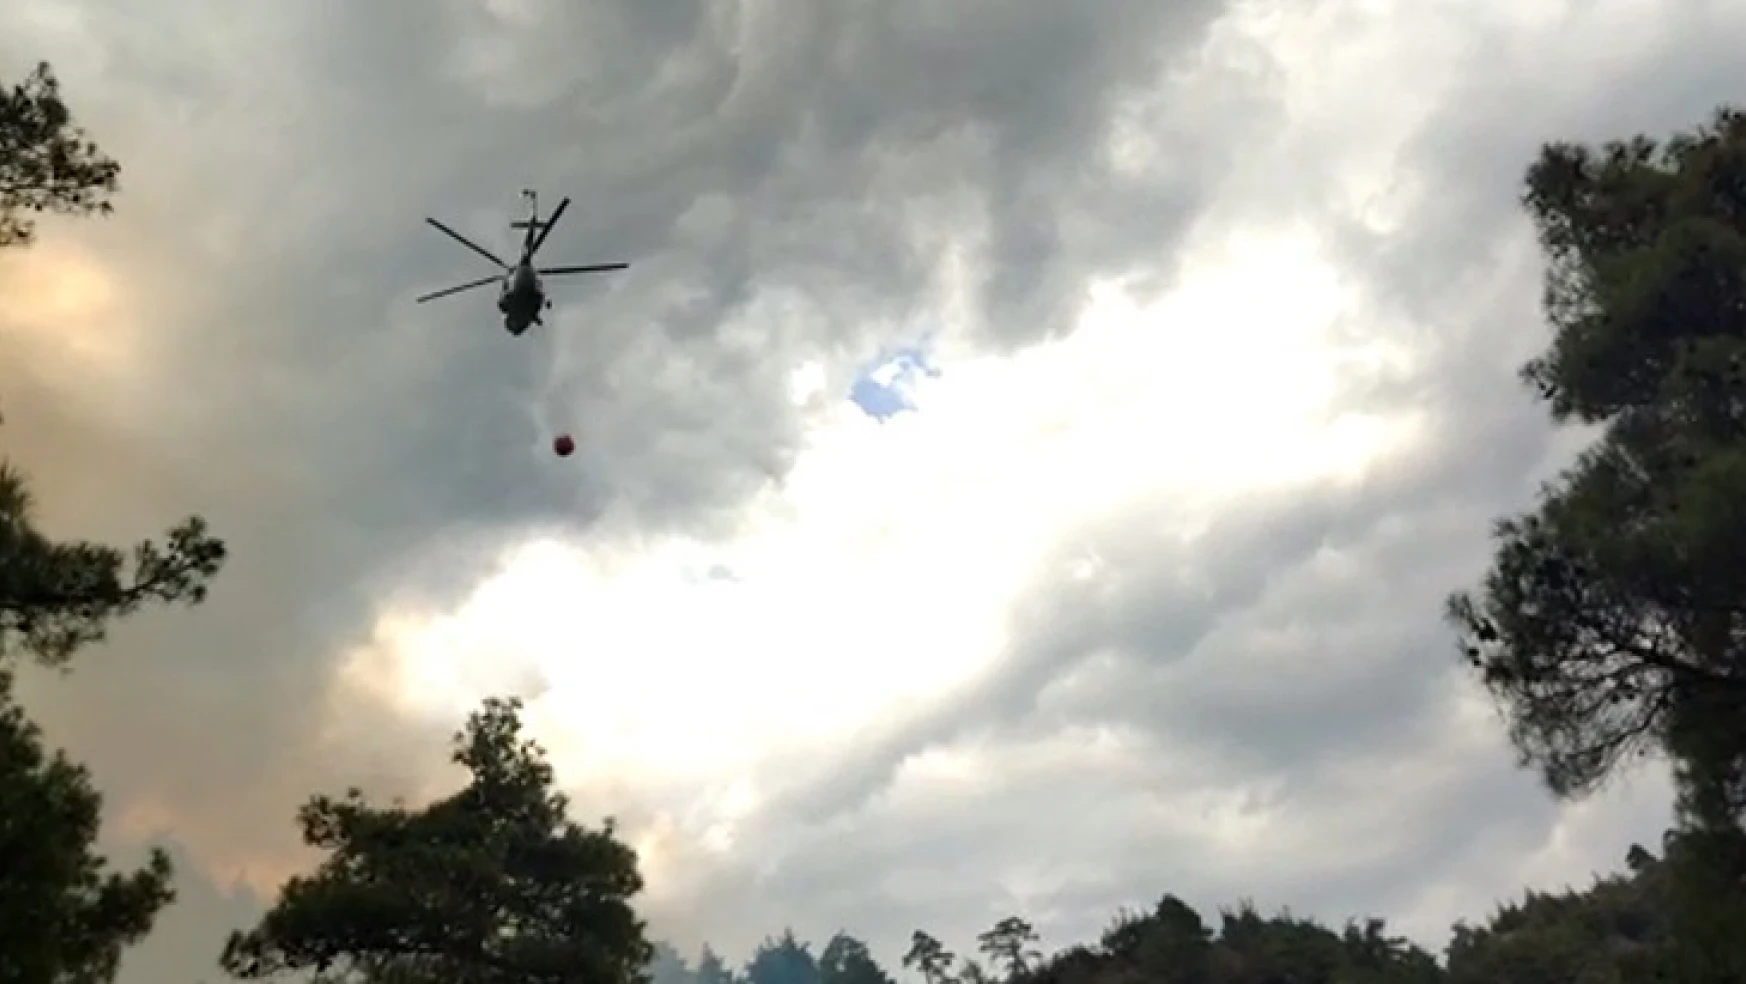 Kahramanmaraş'ta orman yangın: 4 Helikopter, 10 arazöz, 150 orman işçisi müdahale etti